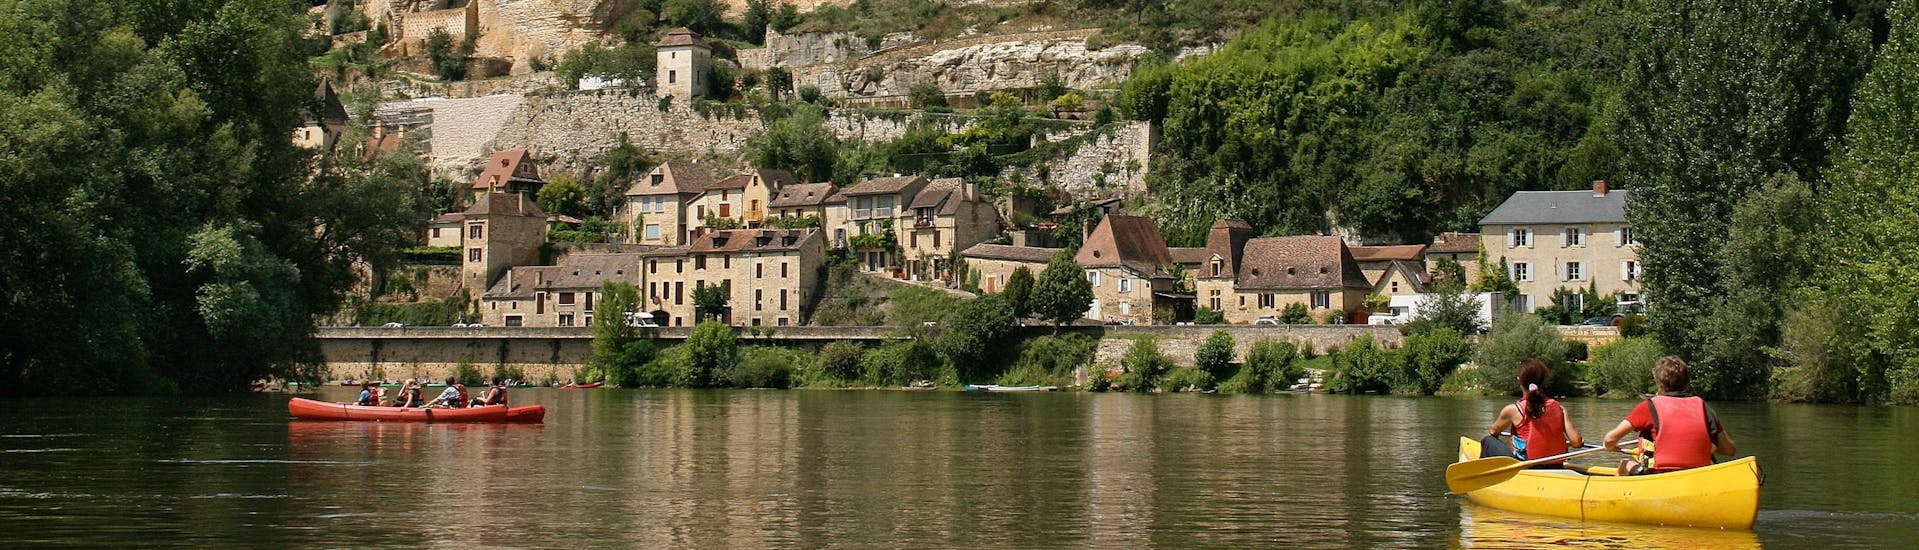 Des vacanciers profitent de leur vacances pour faire une sortie en canoë sur la Dordogne, et passent en dessous du château de Beynac.